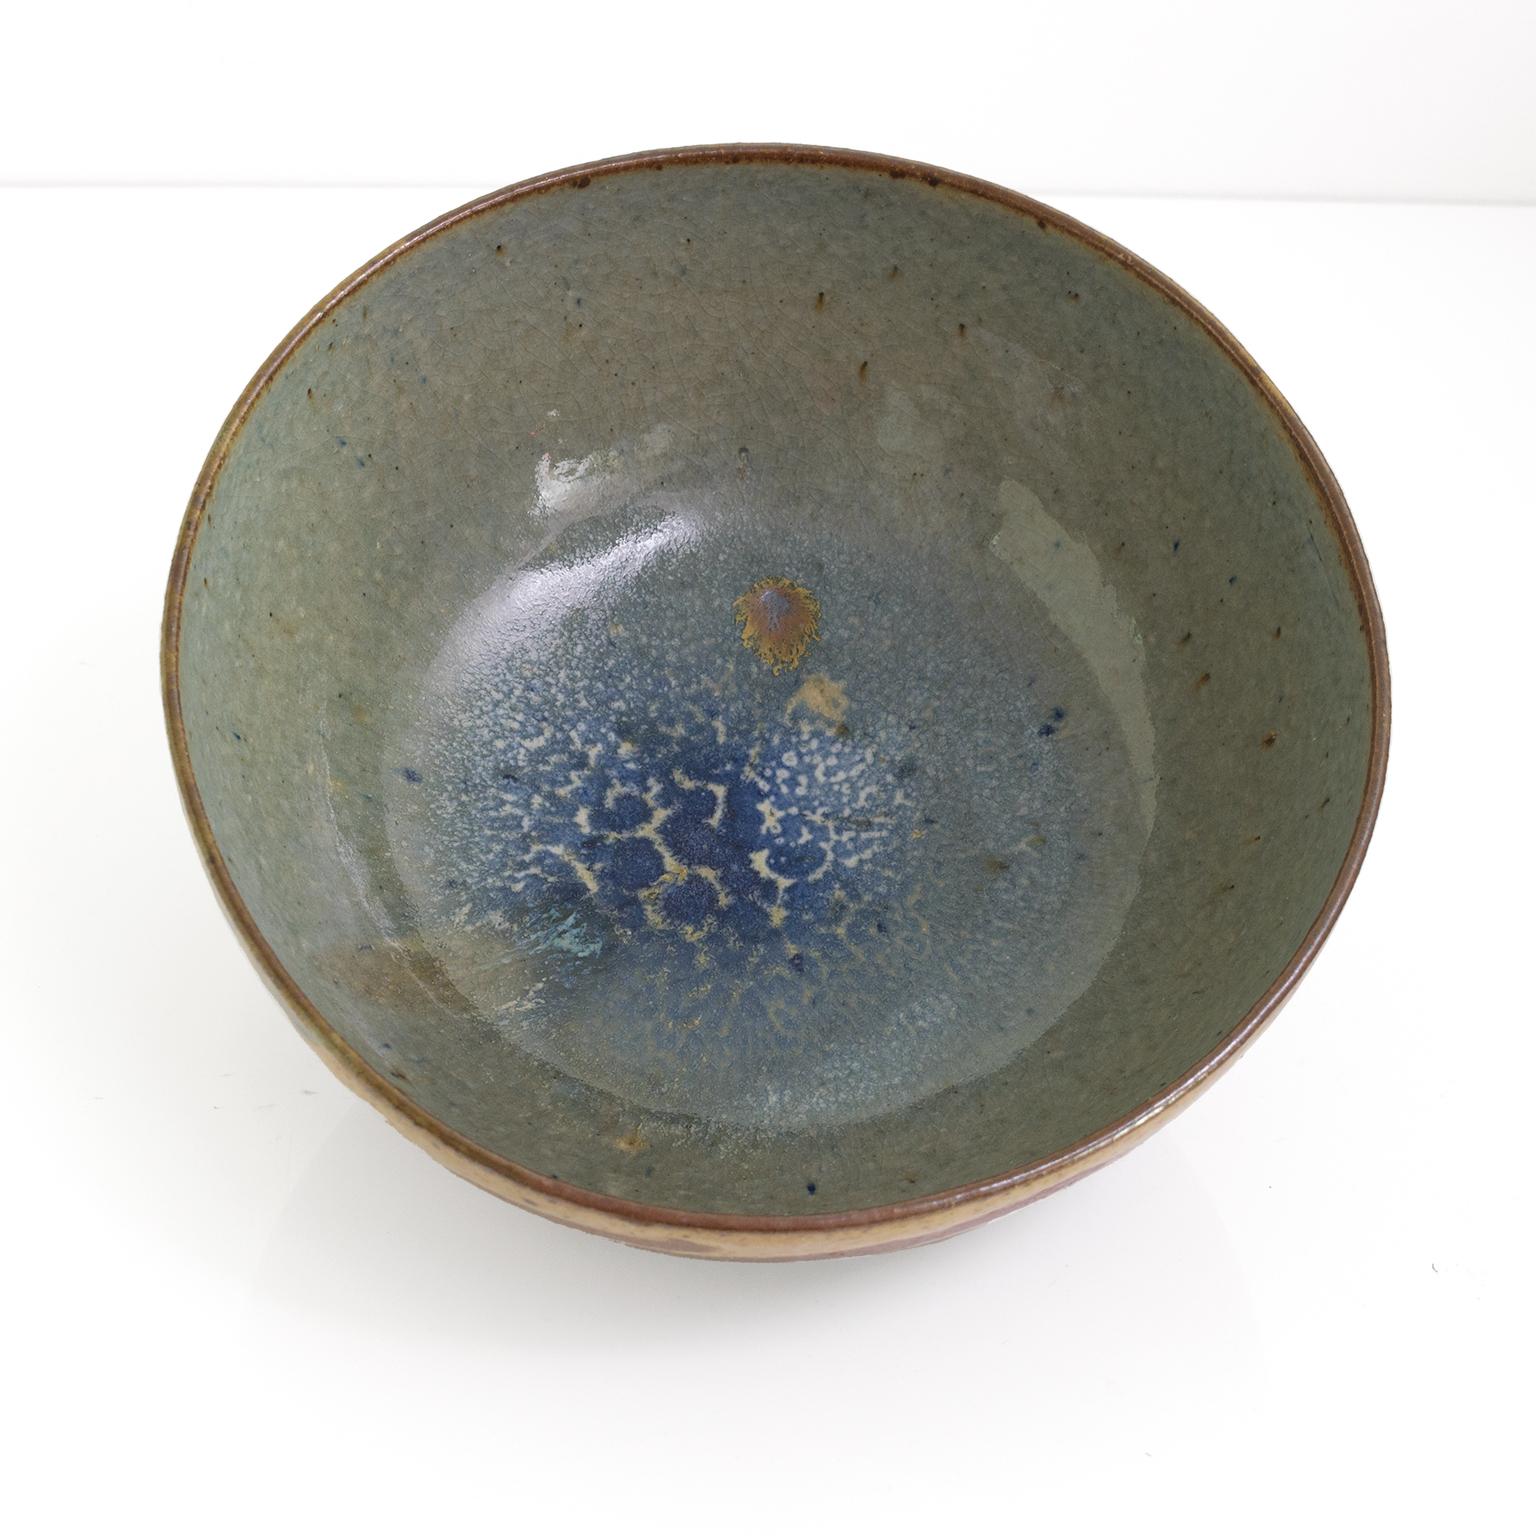 Ulla & Gustav Kraitz Hand Thrown and Glazed Ceramic Bowl, Sweden, 1976 For Sale 2